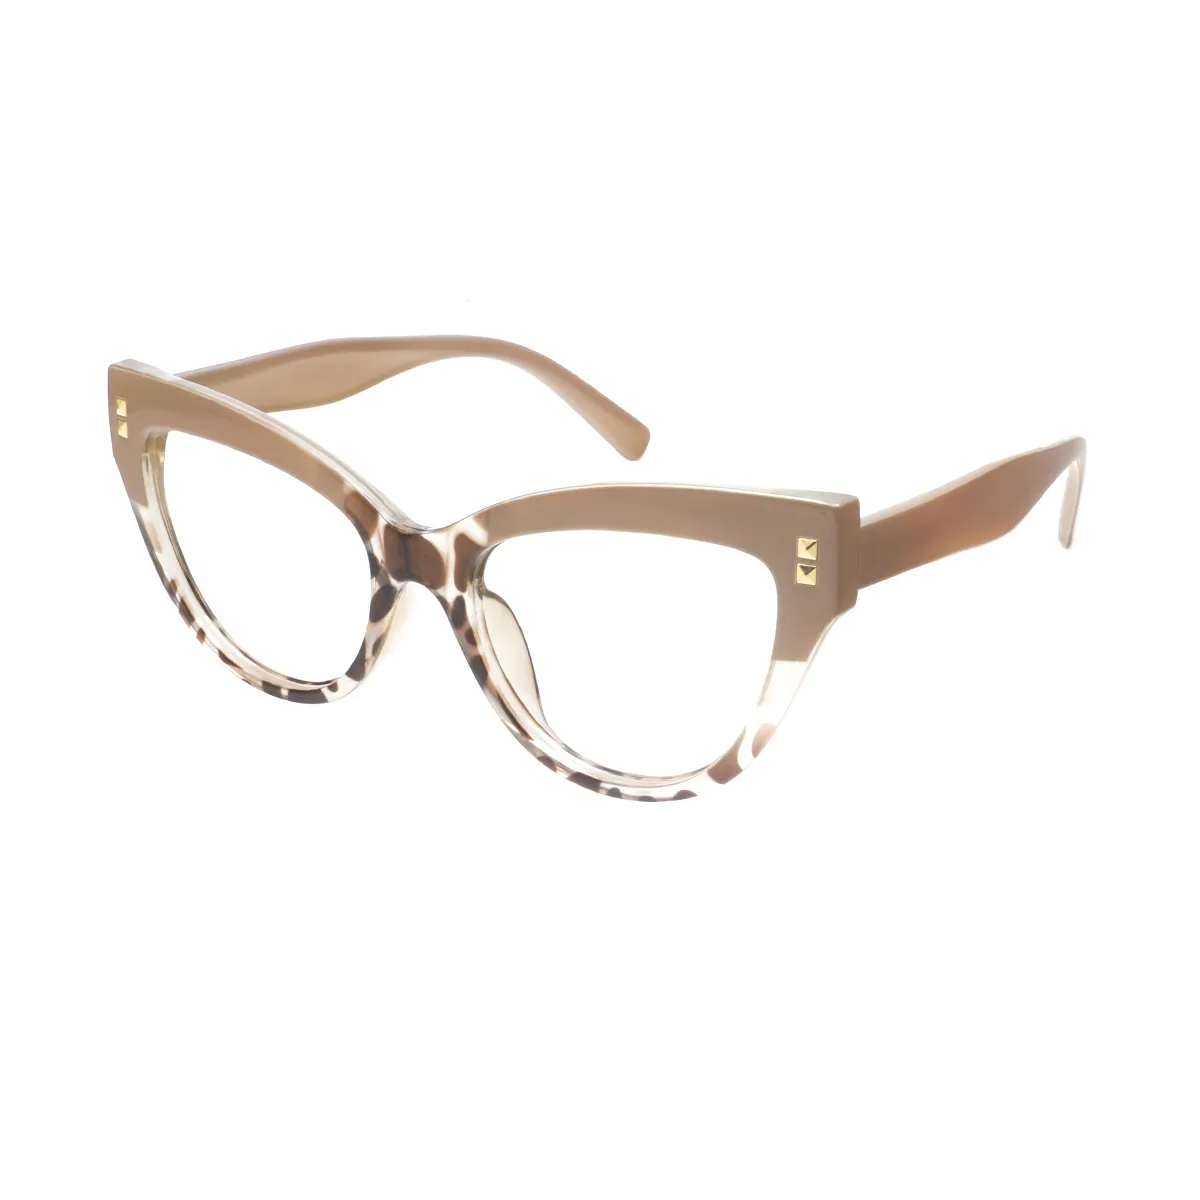 Cathy - Cat-eye Tortoiseshell-Cream Glasses for Women - EFE